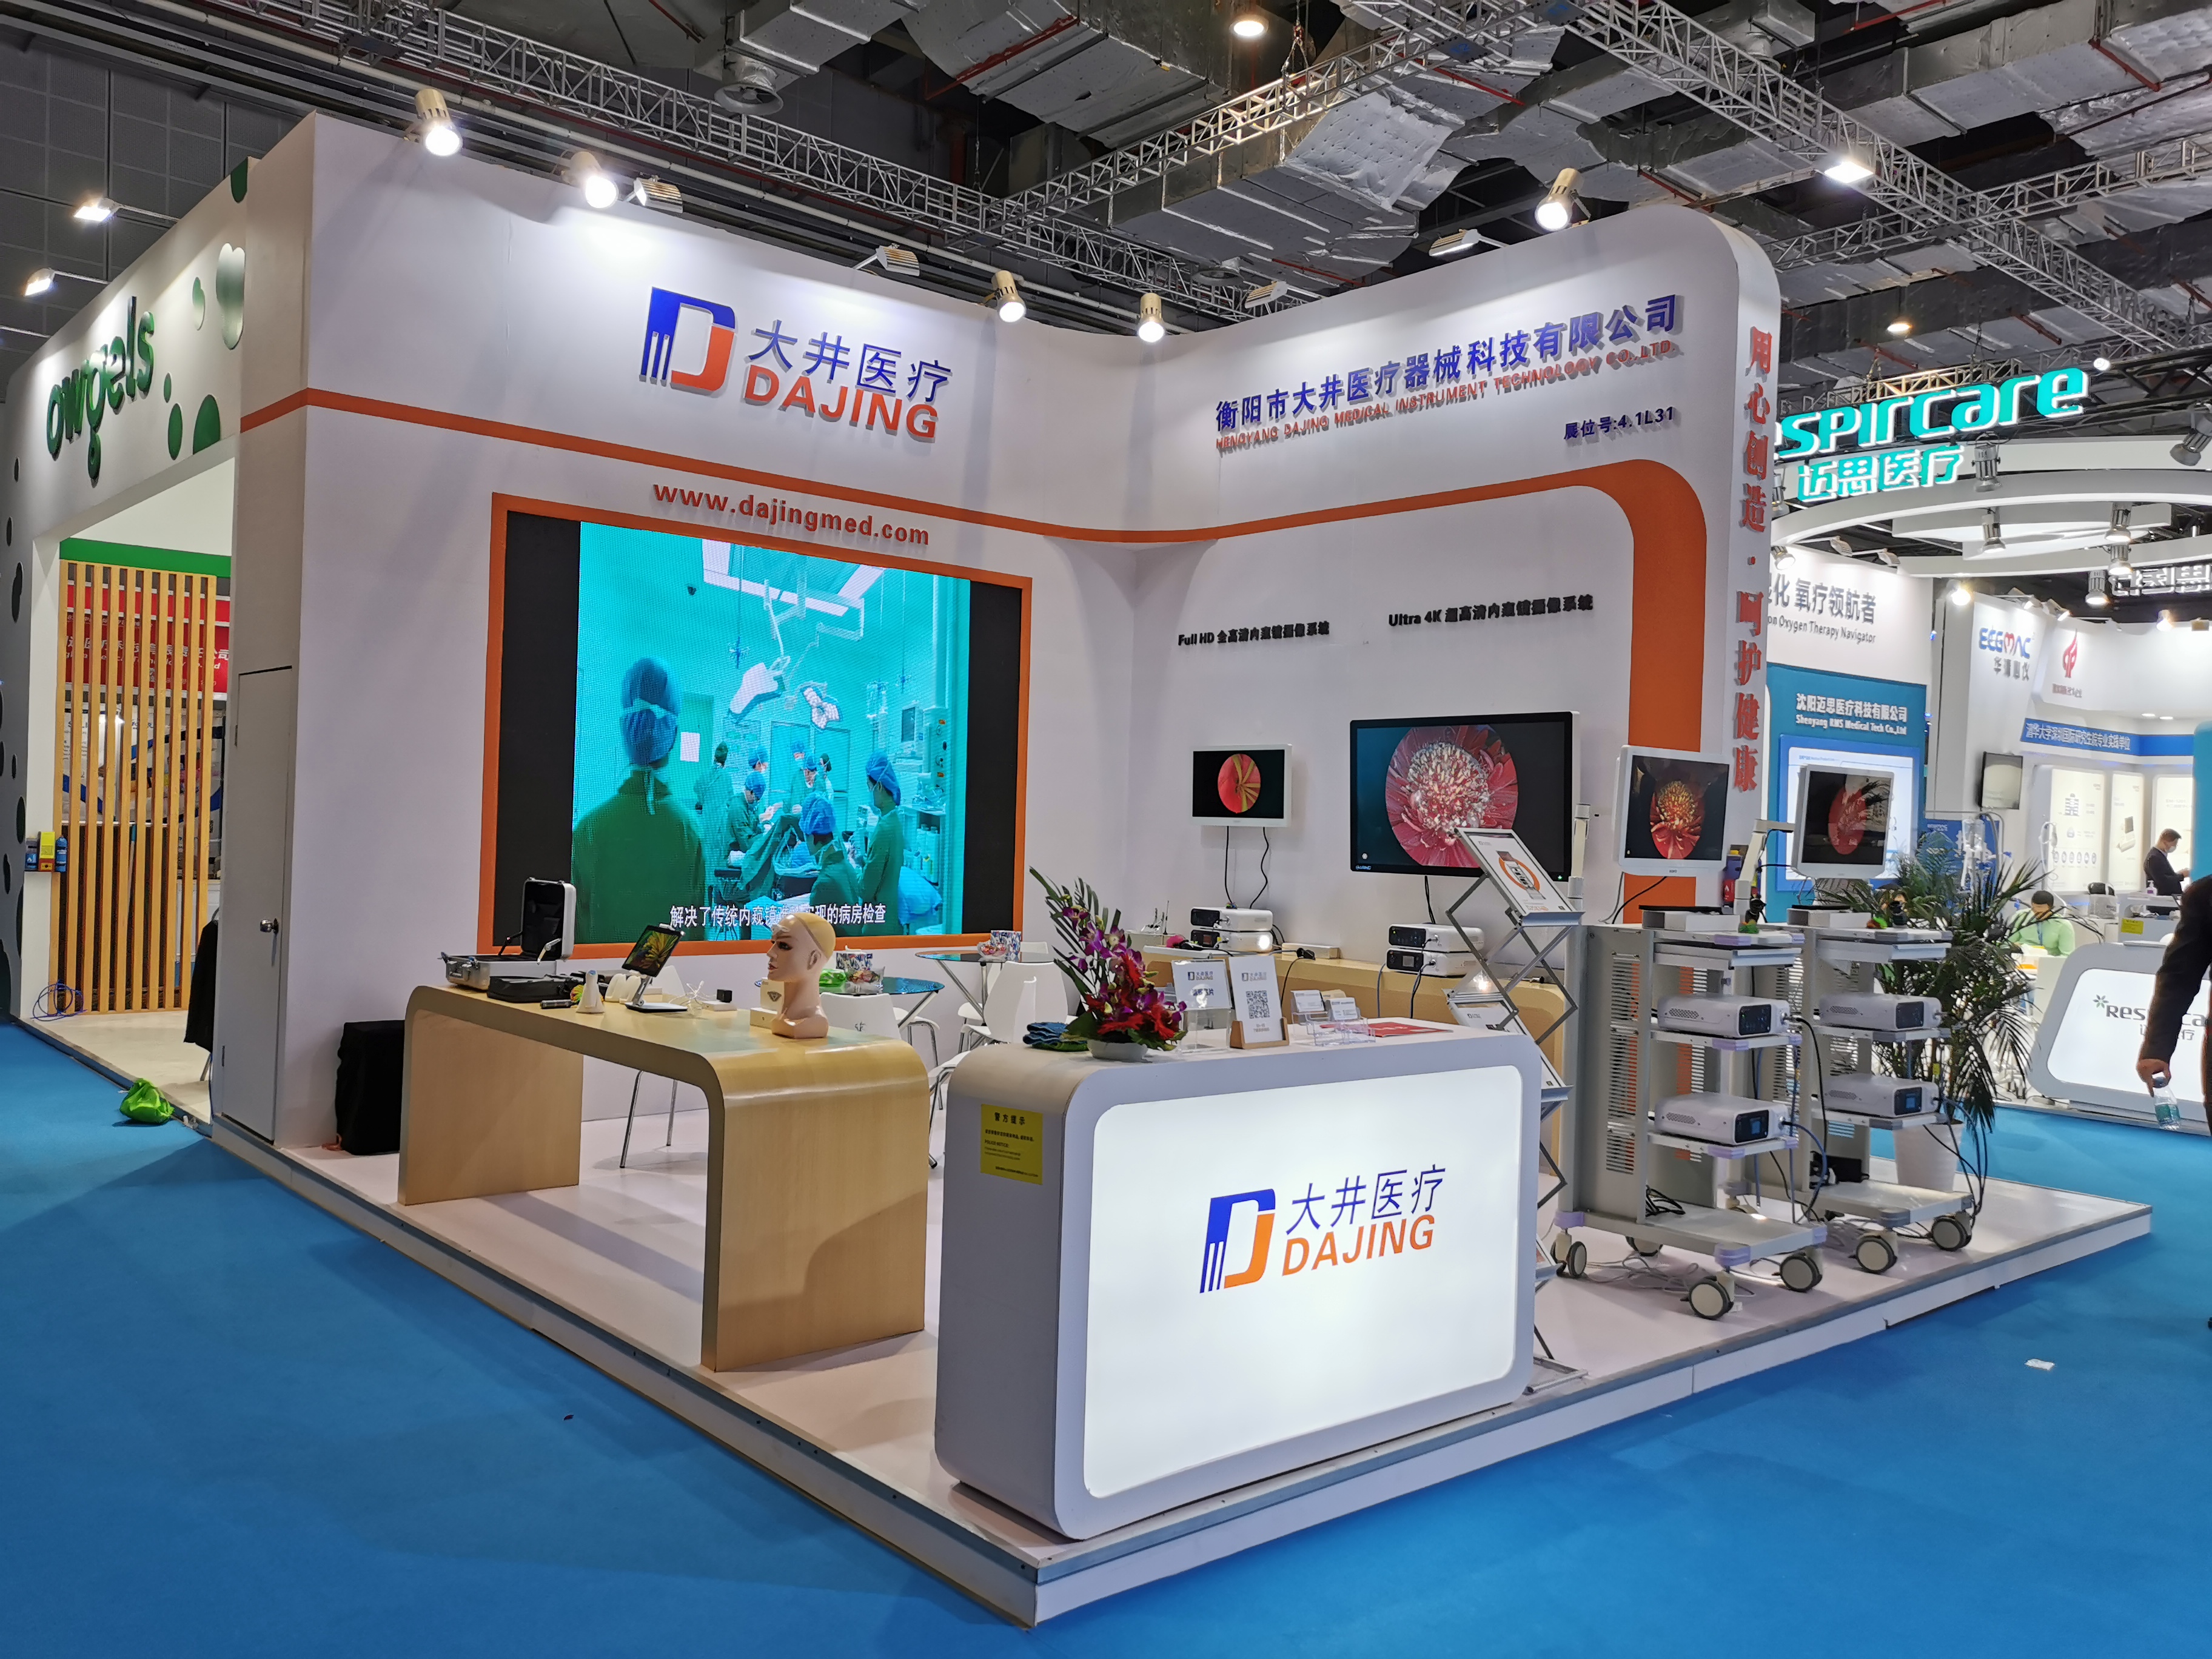 Dajing Medical in CMEF Shanghai 2020